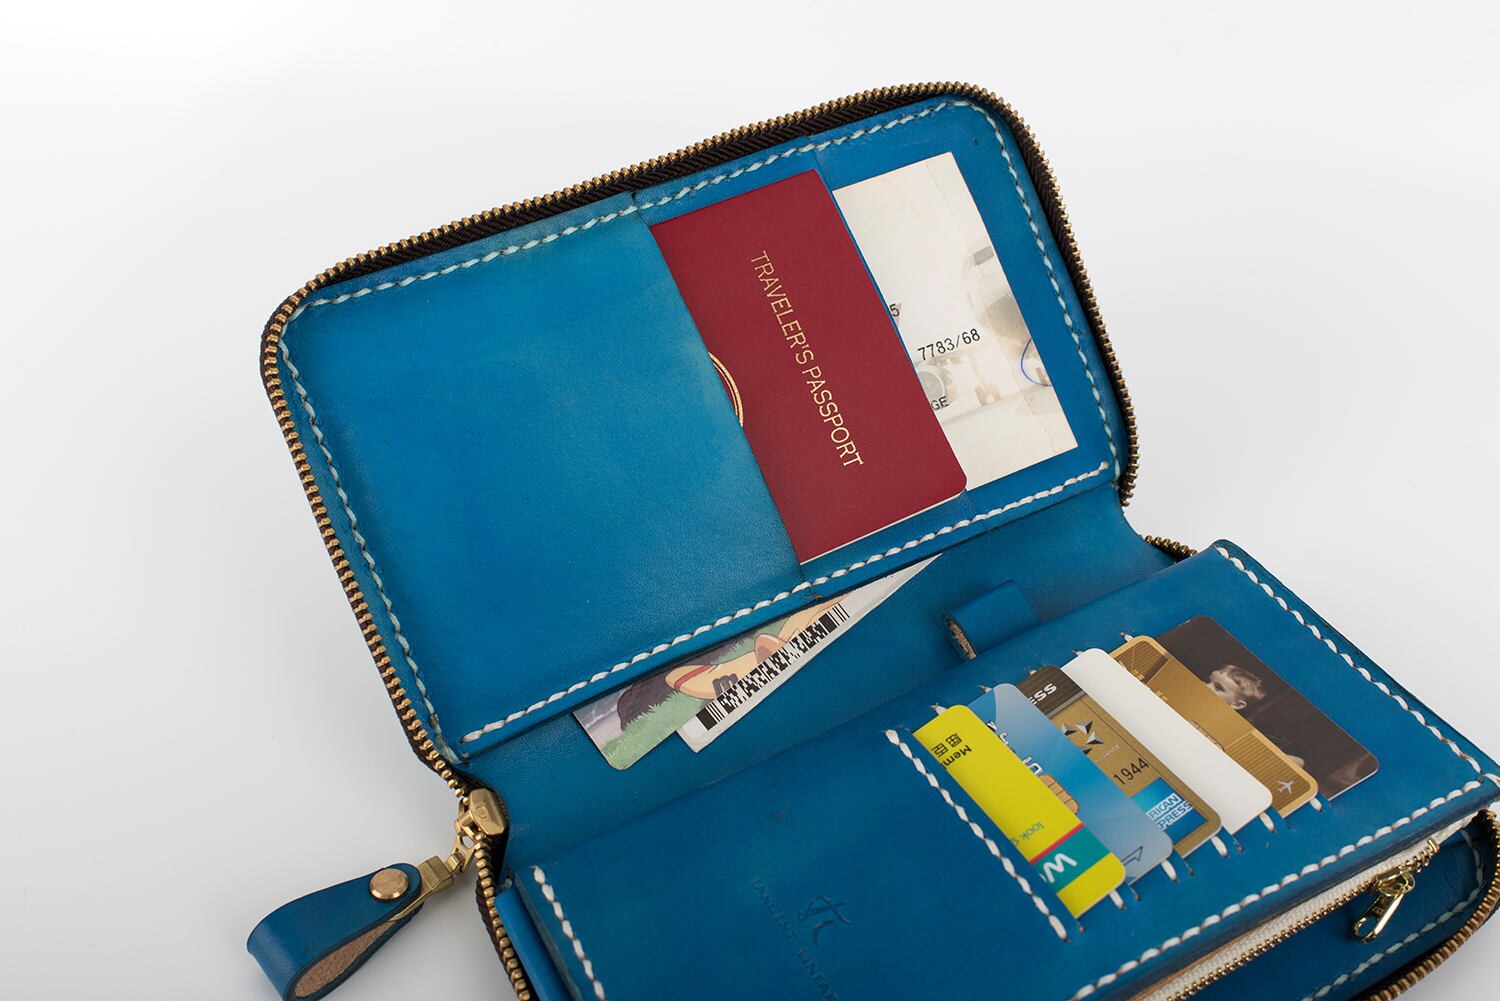 Buy Passport Wallet Travel Wallet Organizer Clutch Wallet Online in India 